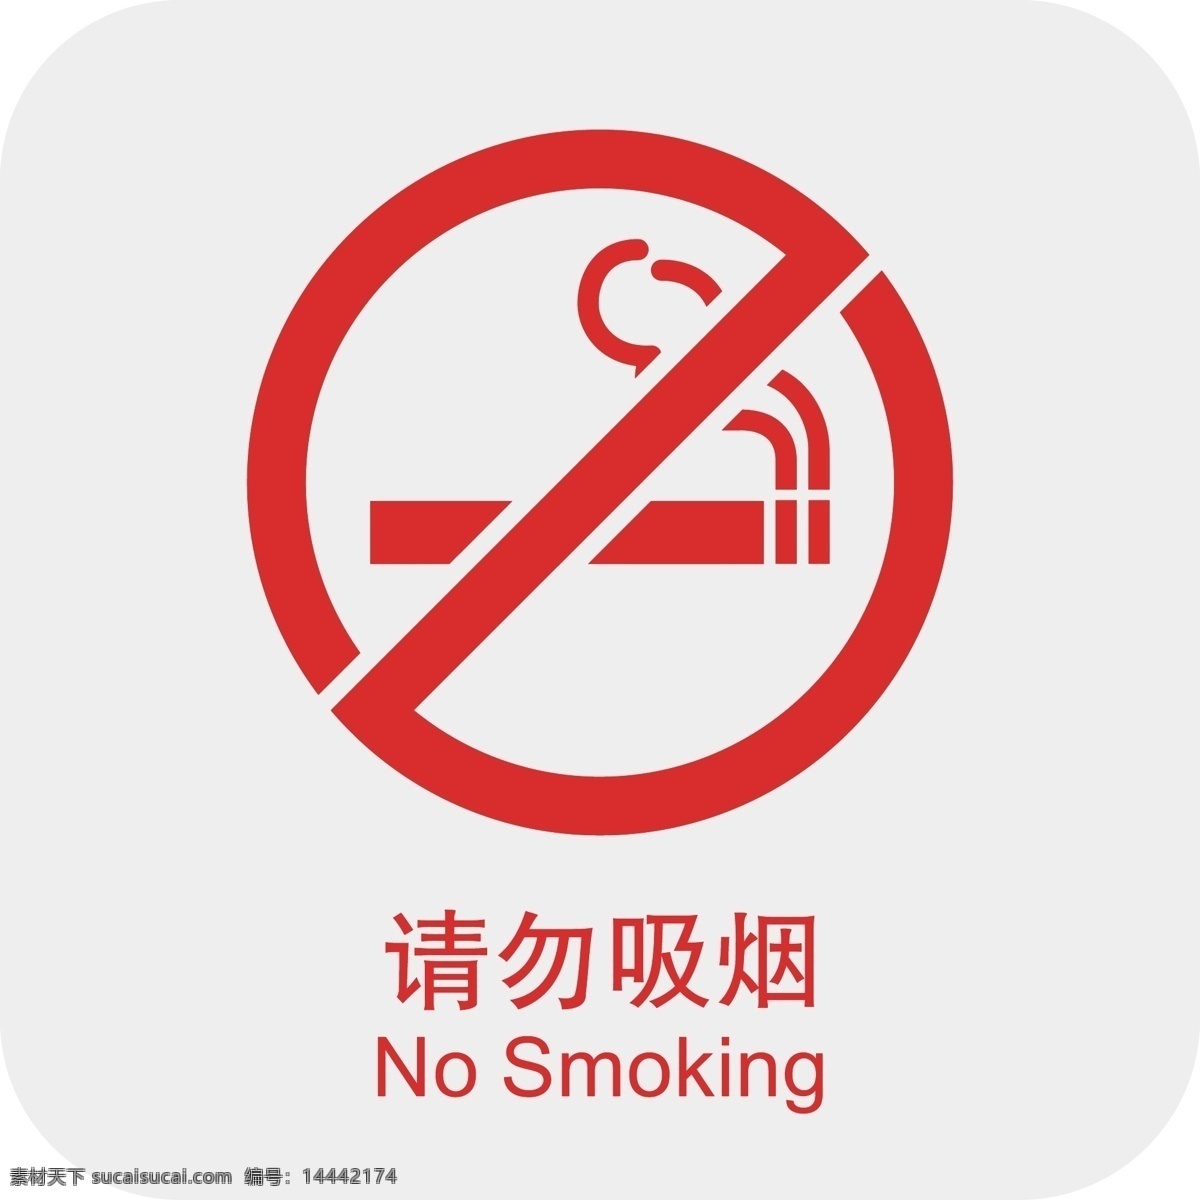 请勿吸烟 请勿抽烟 禁止吸烟 吸烟 禁烟标识 禁烟 公共标识类 标志图标 公共标识标志